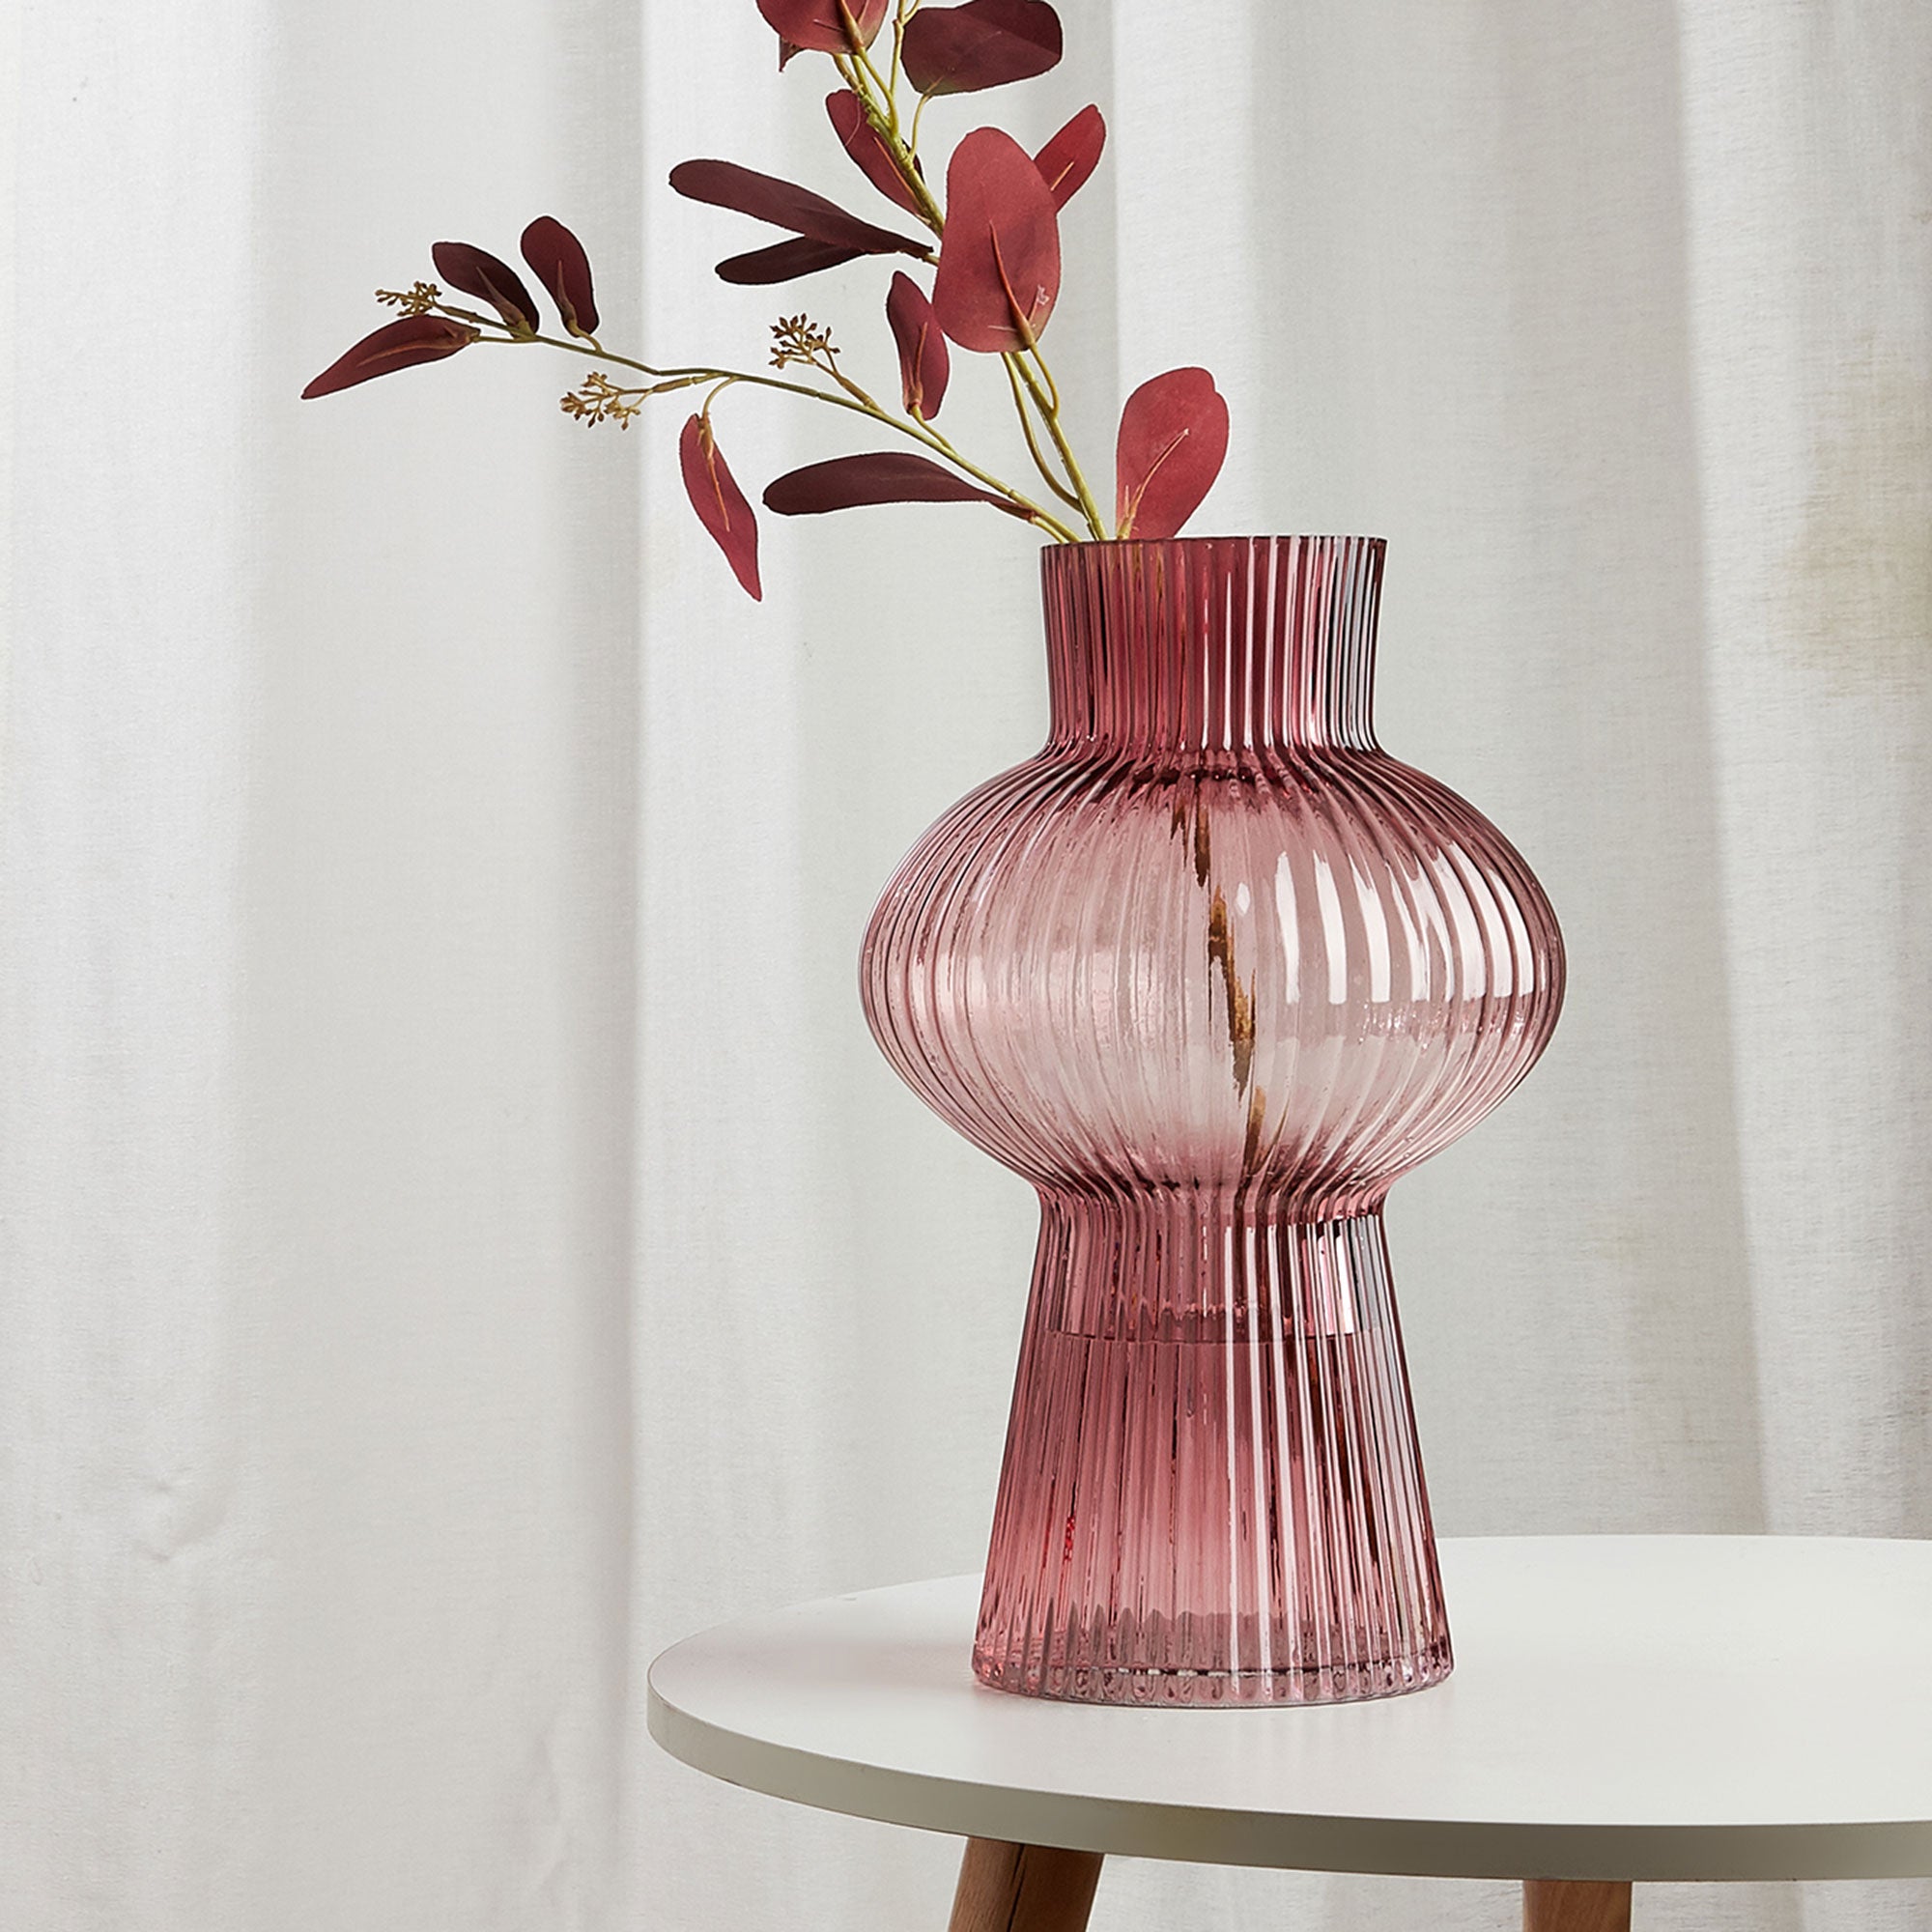 Clare - Cranberry Vase